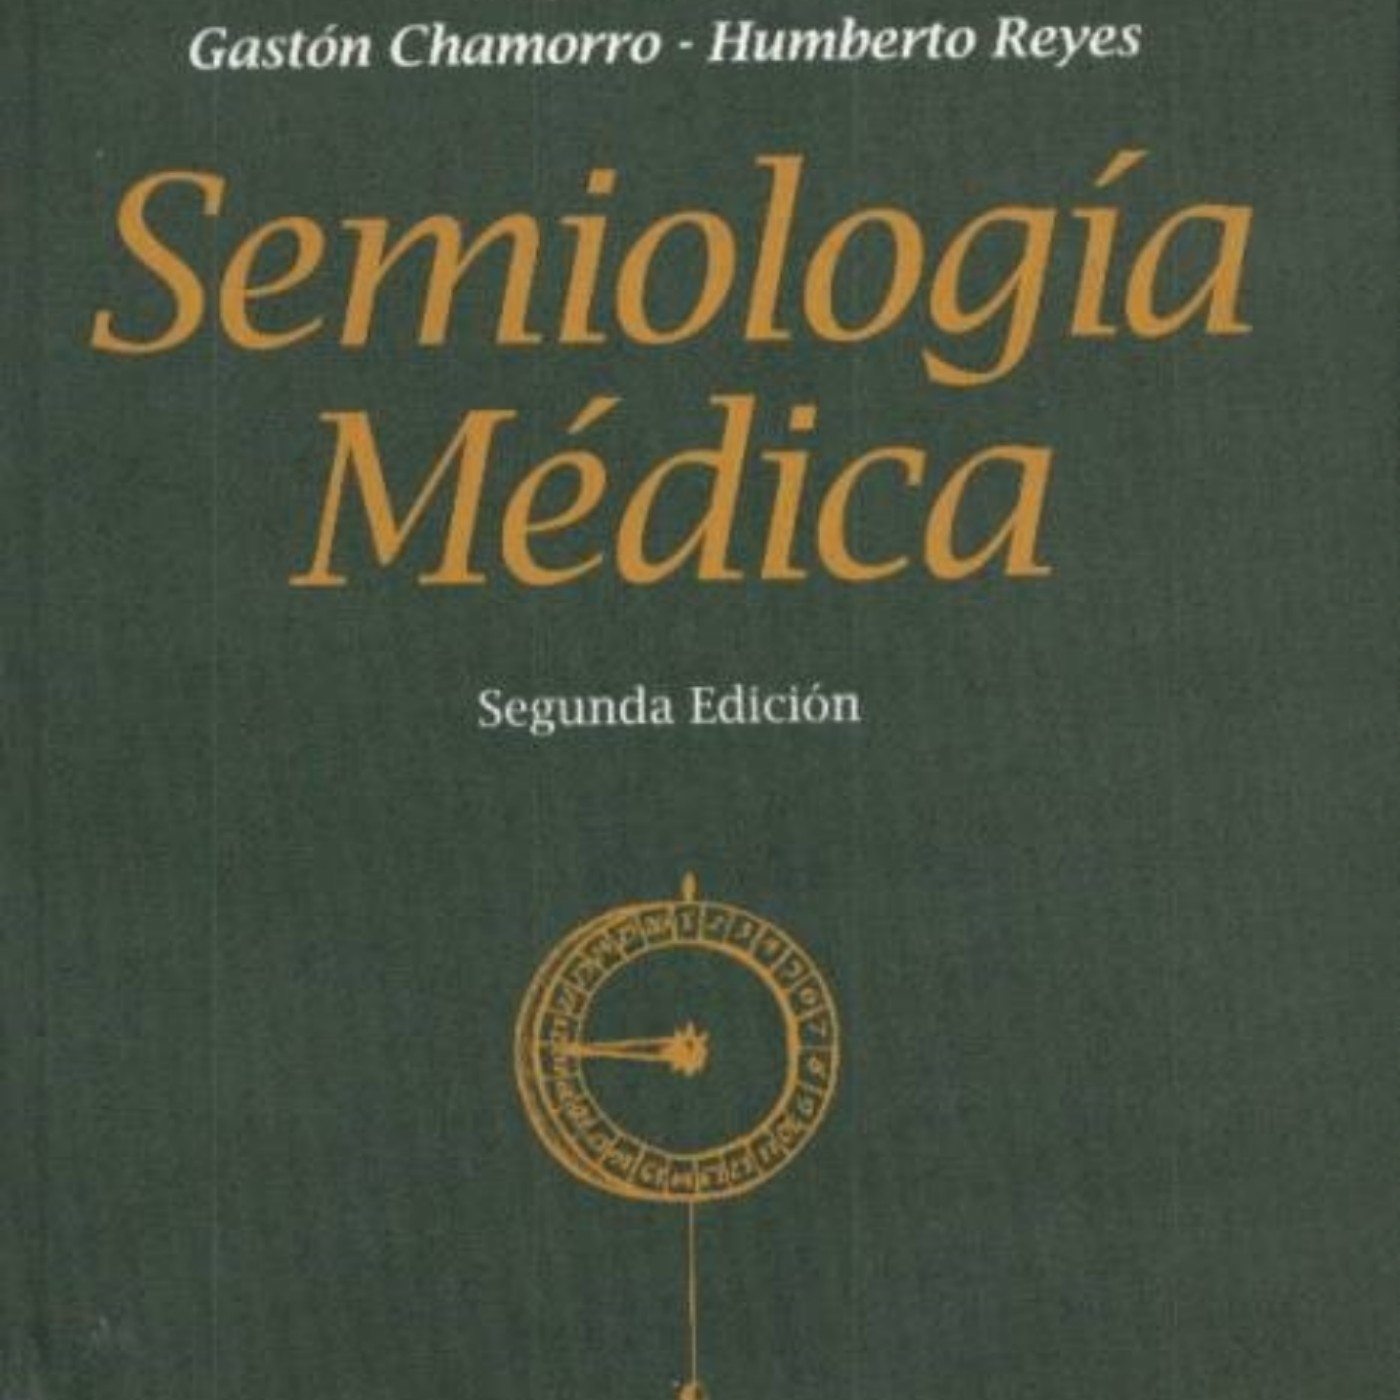 Semiologia Medica Argente 2da Edicion Pdf Free | Podcast on SoundOn